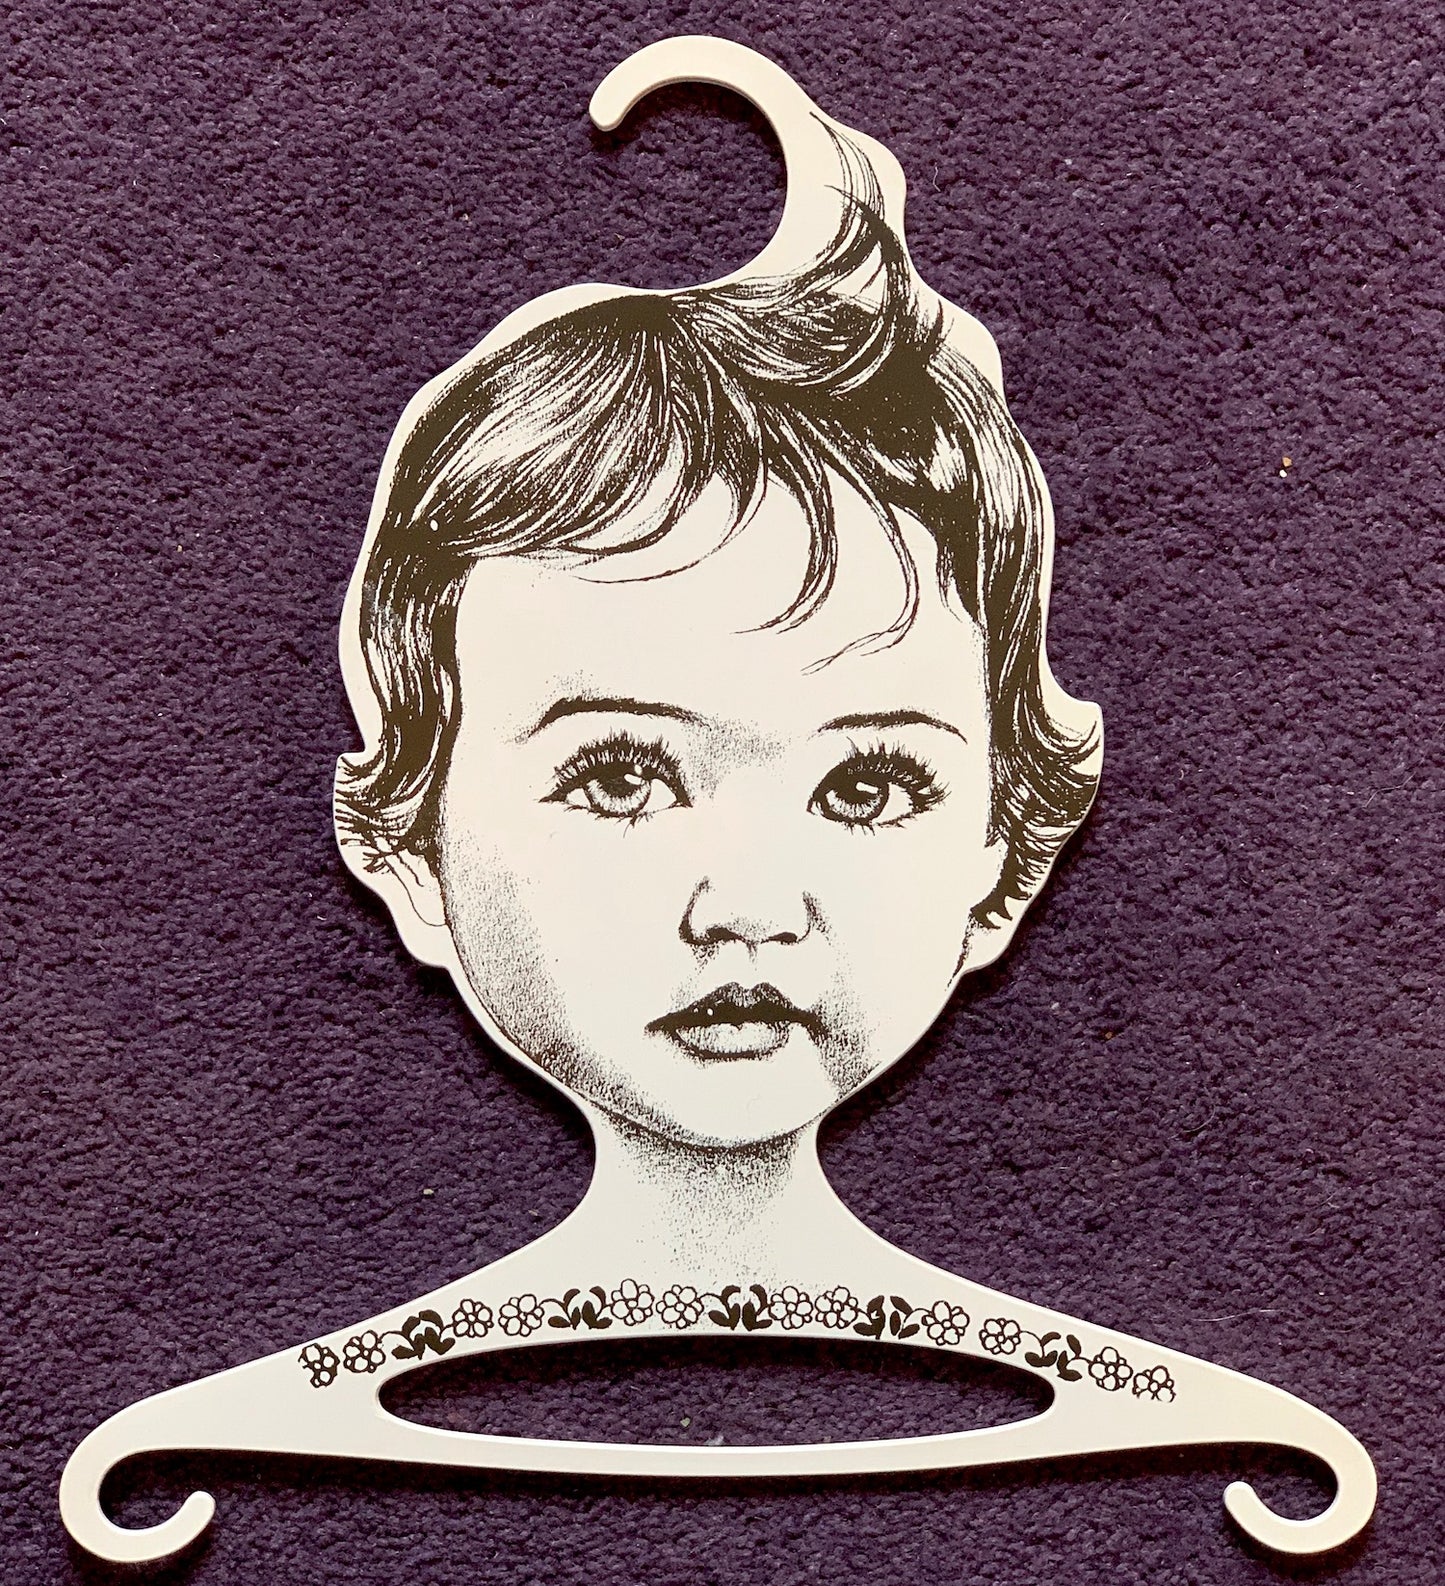 Rare Joyful Baby Head Hangers - 1960s W. German ges.gesch